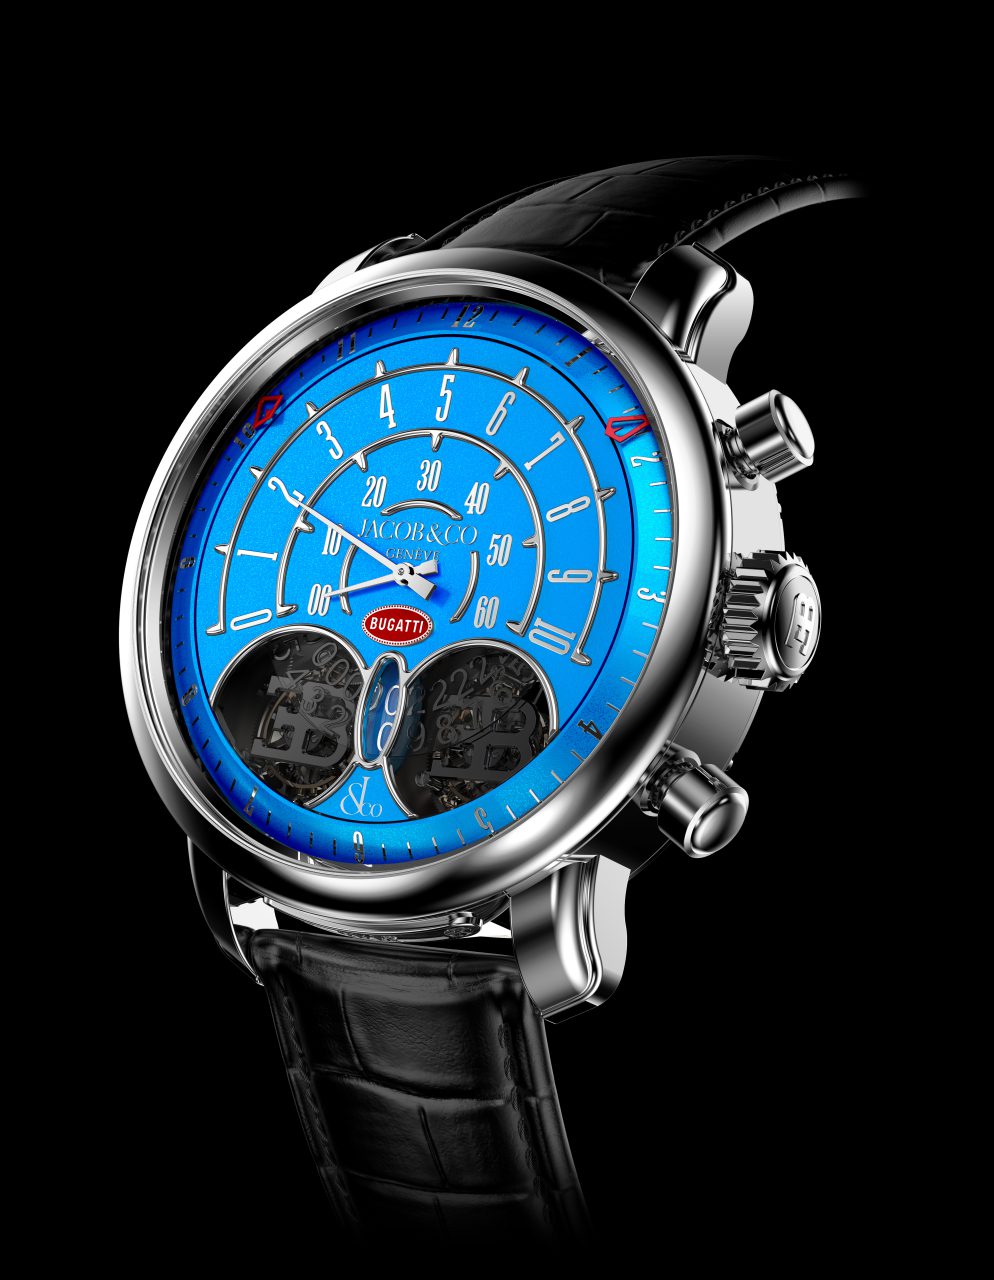 Bugatti, New timepiece a tribute to Jean Bugatti, ClassicCars.com Journal